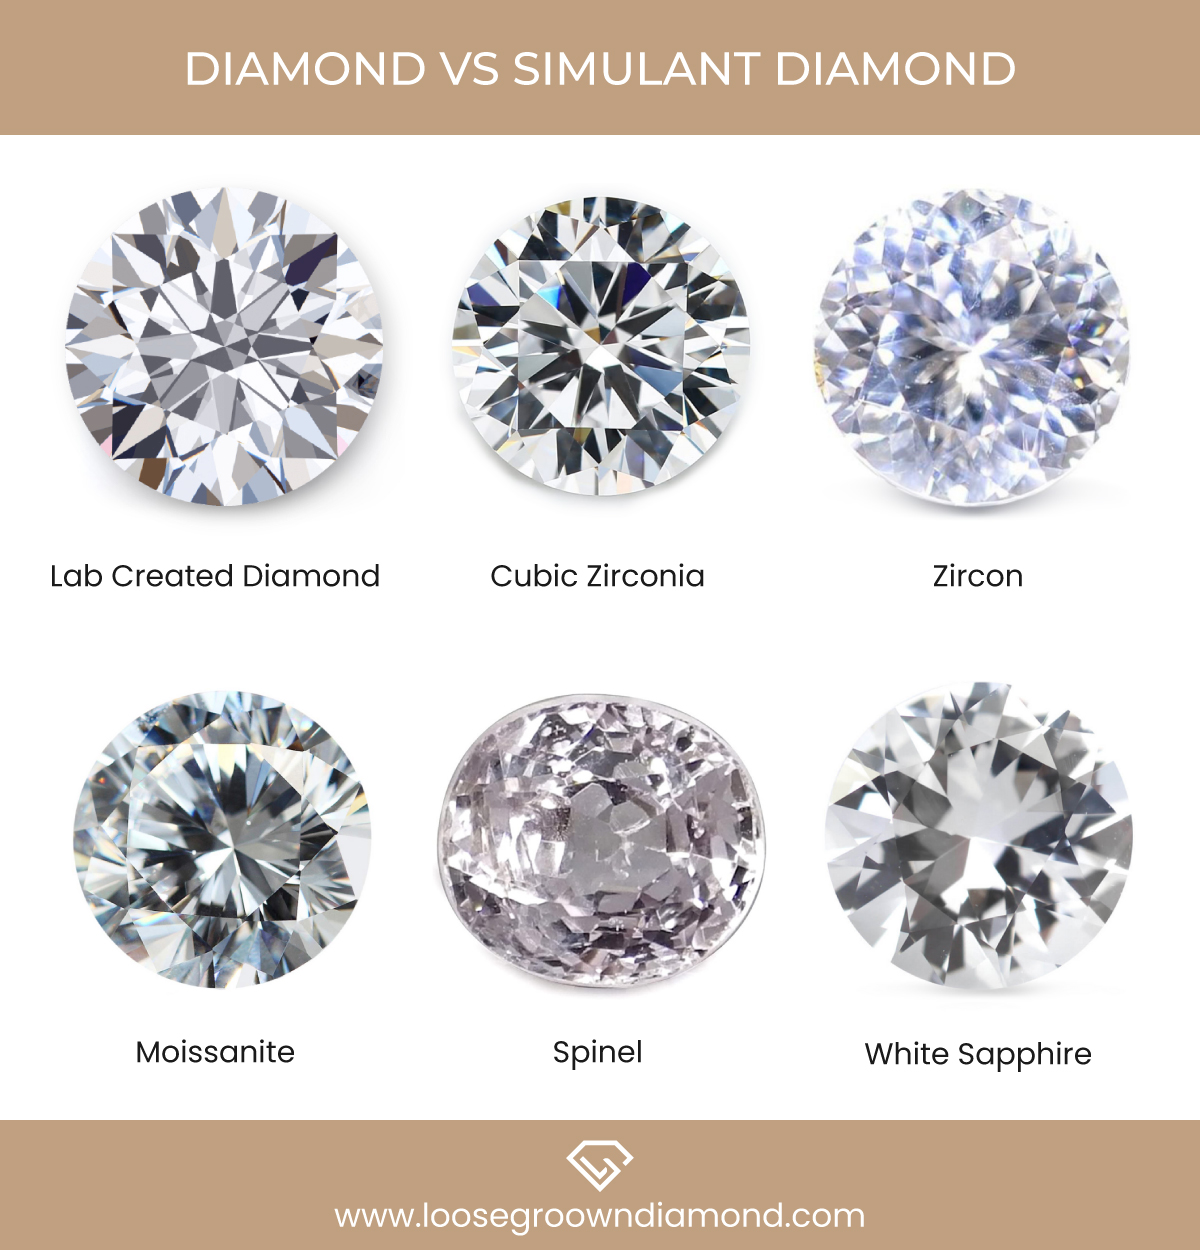 Simulant Diamonds vs Lab grown Diamonds